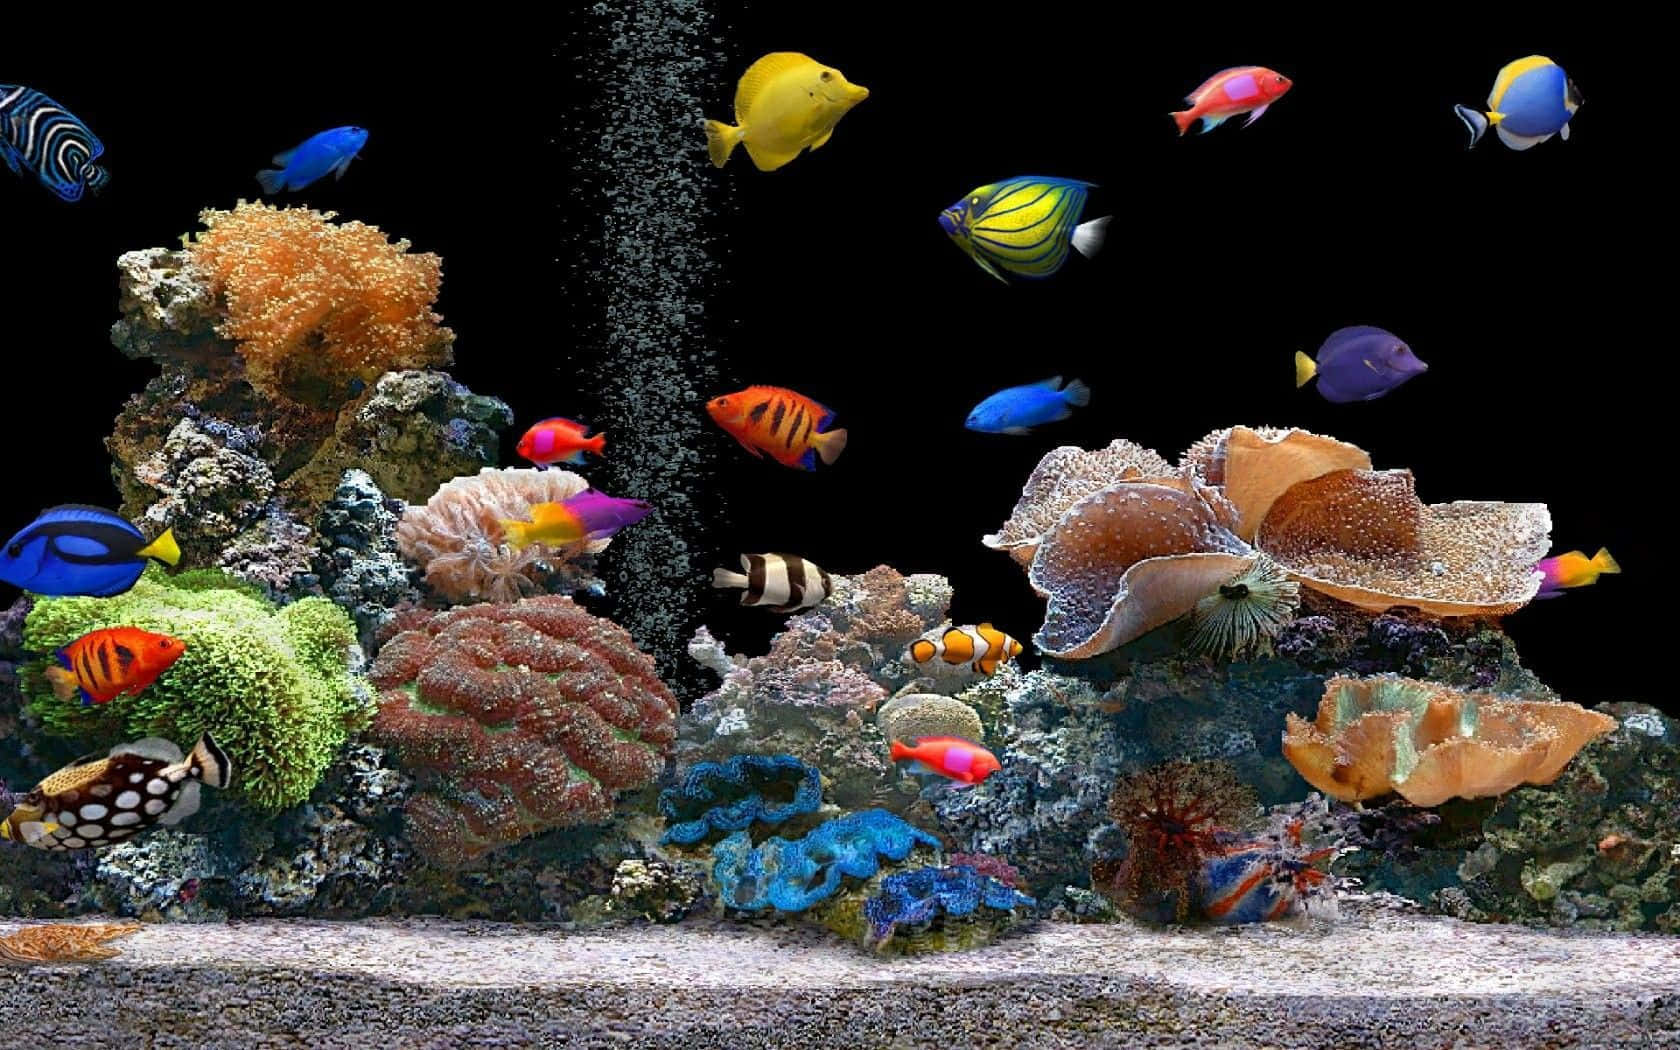 A Live Tropical Fish Swims Through a Clear Blue Aquarium Wallpaper